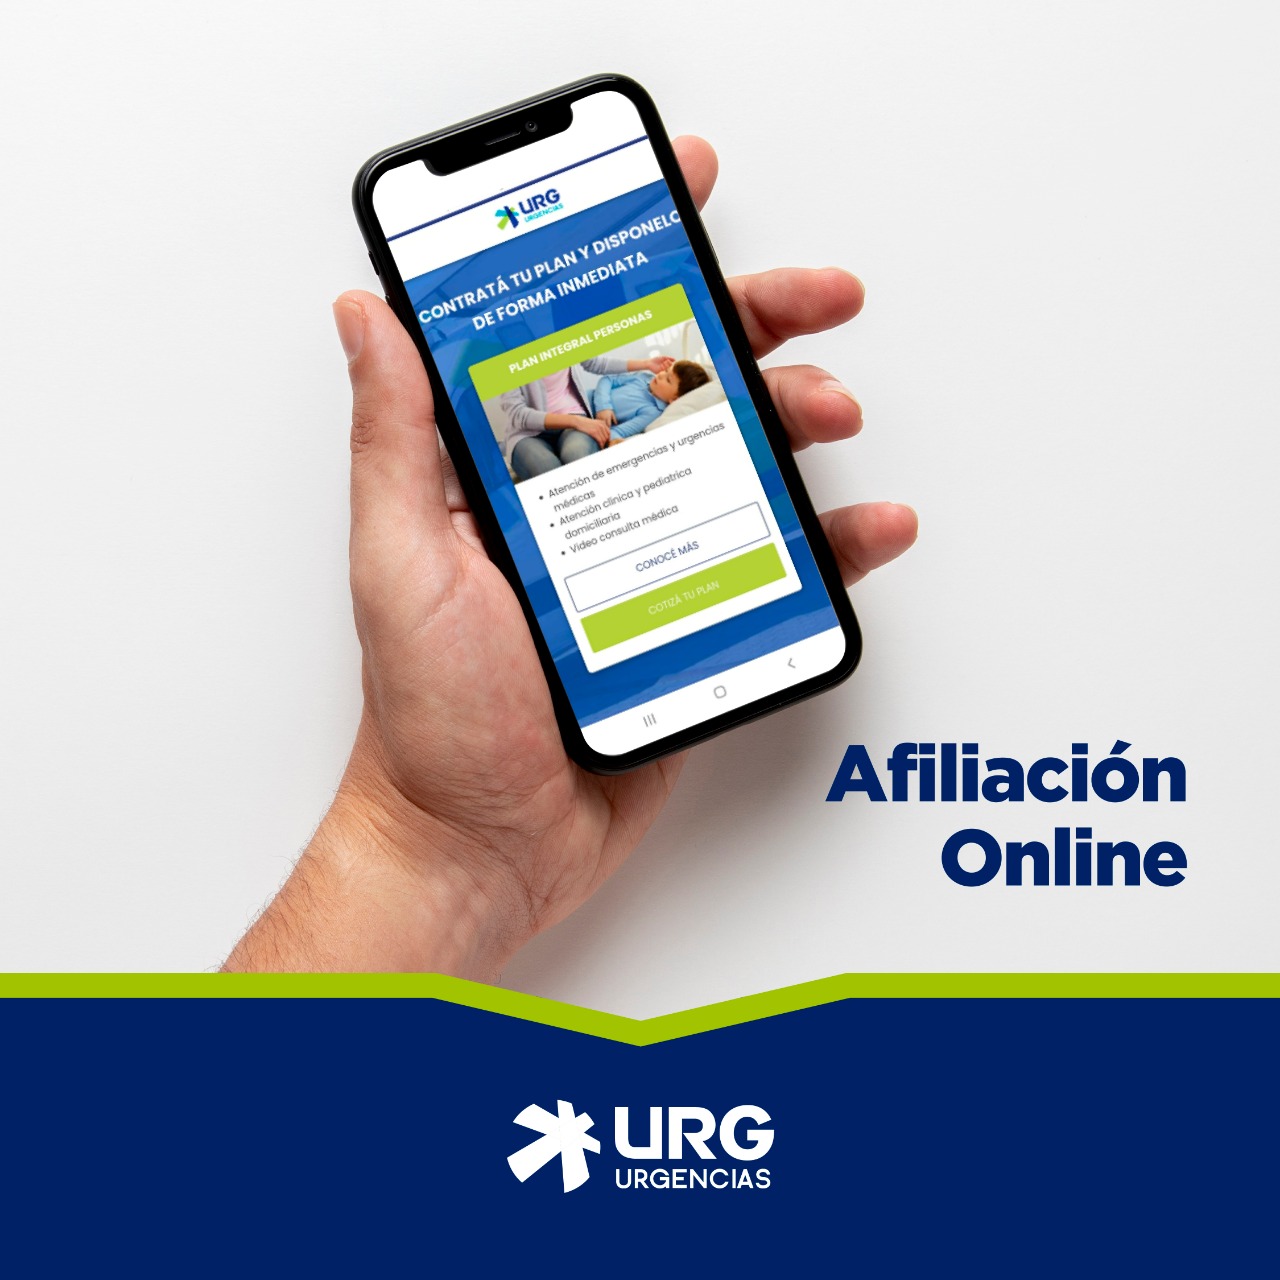 URG Urgencias lanzó su nueva plataforma de venta online